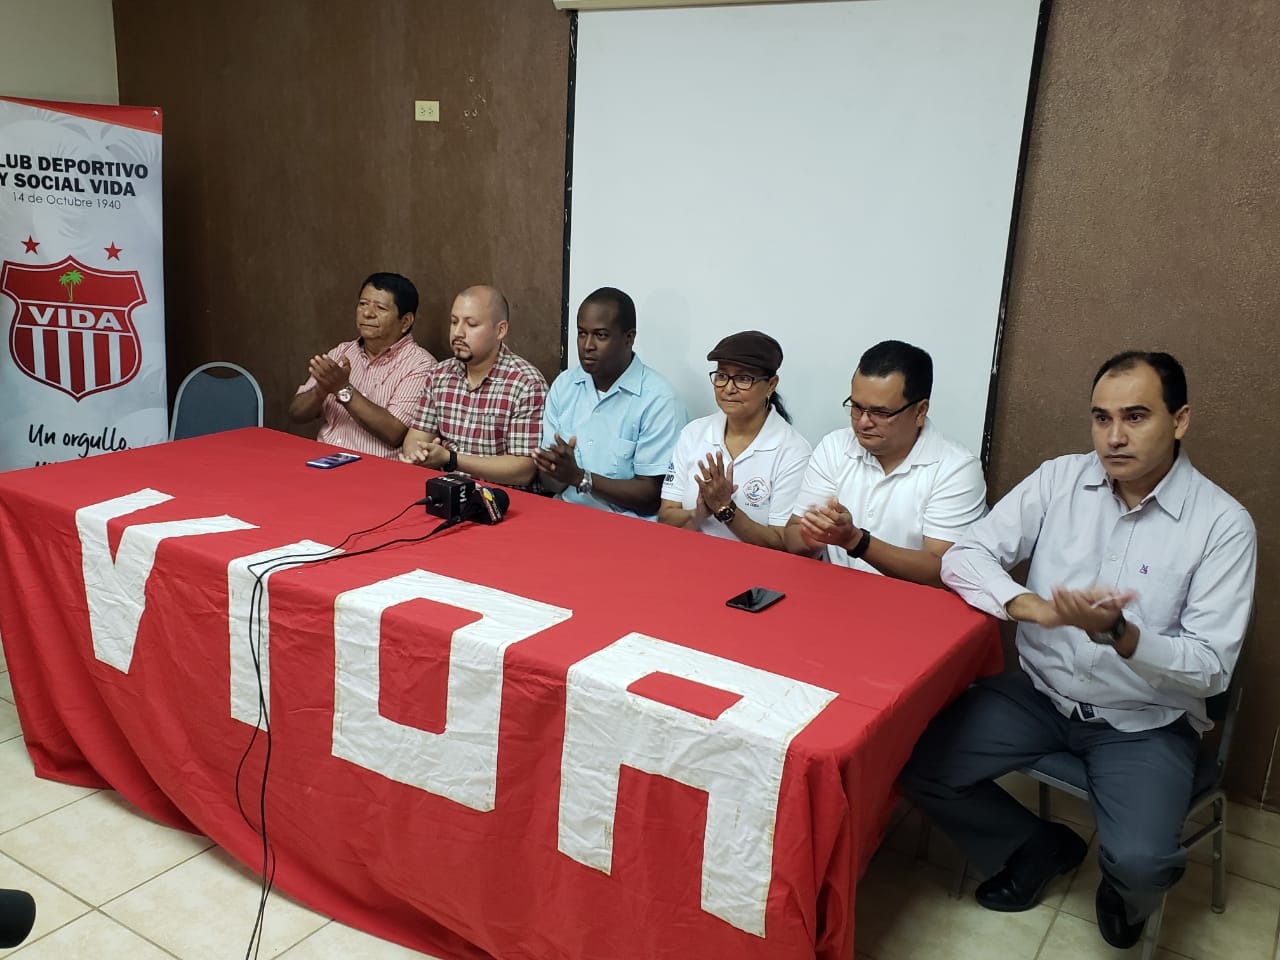 La Ceiba y sus autoridades se visten de rojo en pro del Vidatón